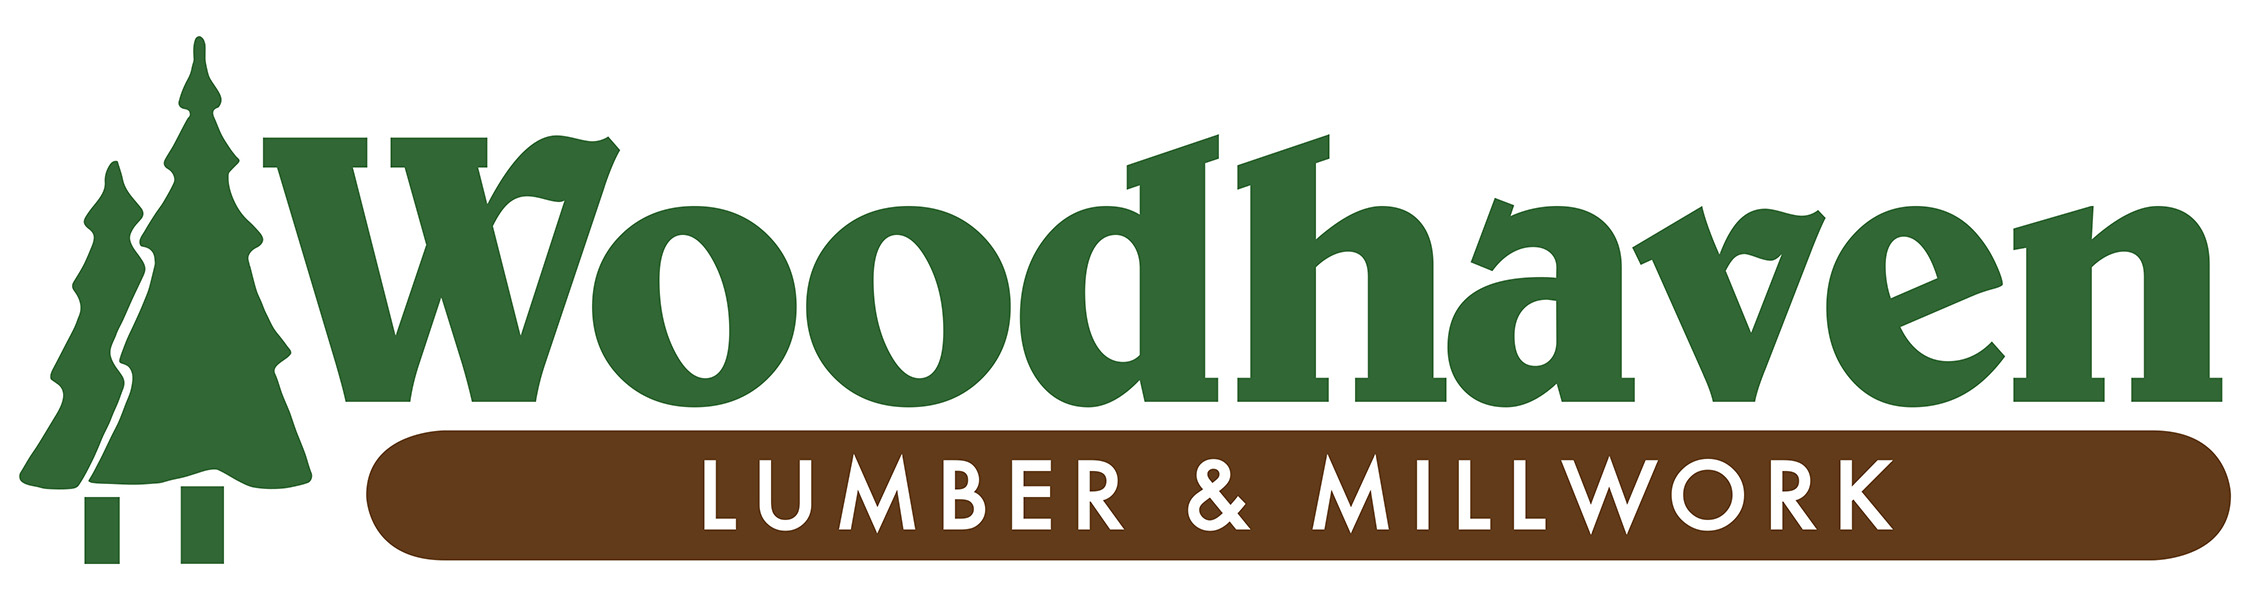 Woodhaven Lumber & Millwork - Lakewood logo